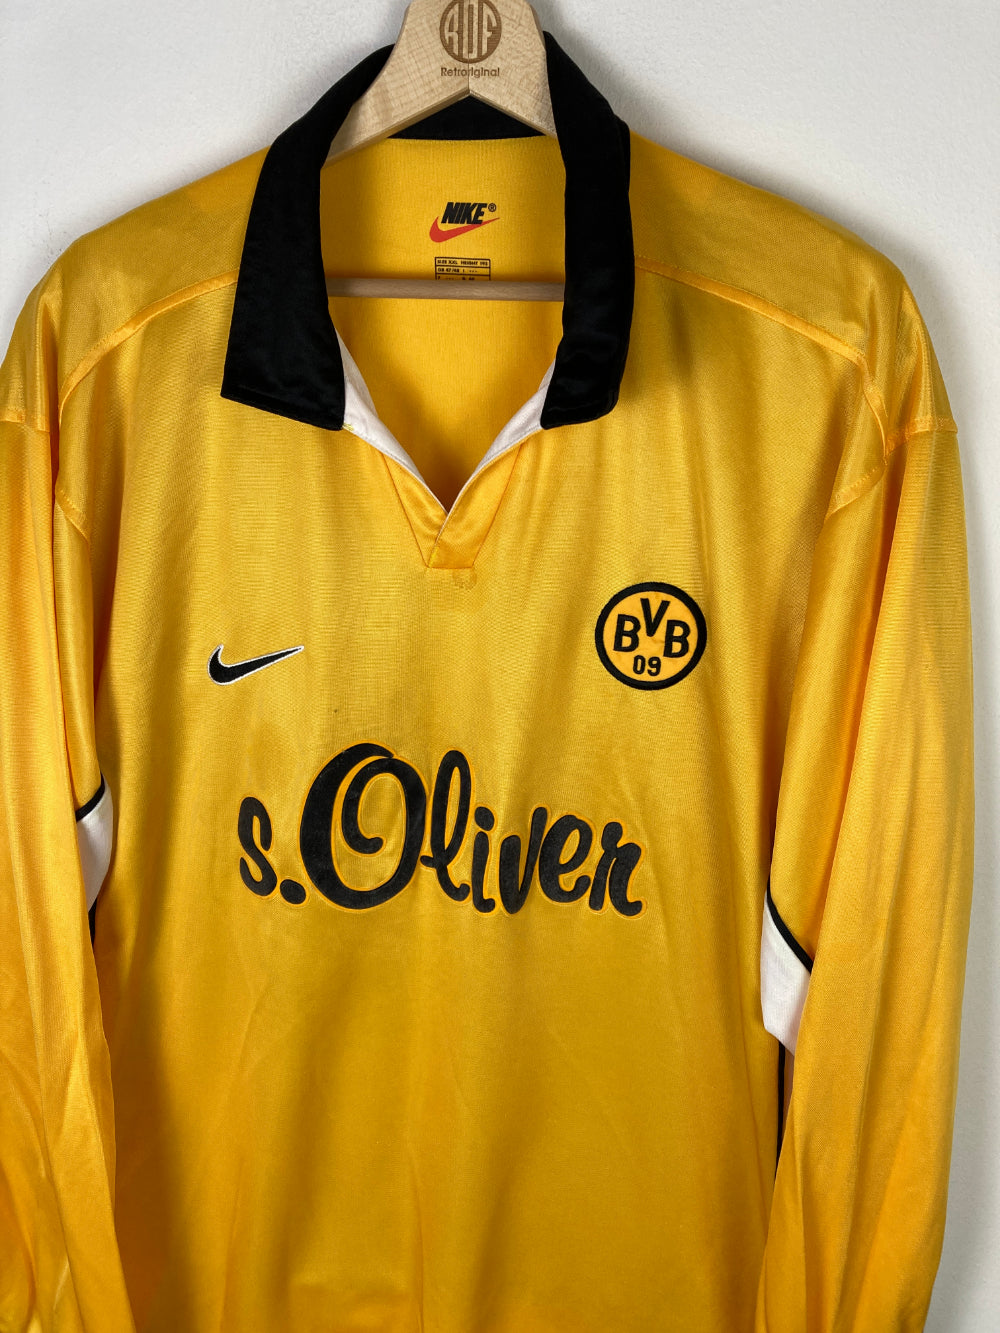 
                  
                    Original Borussia Dortmund Home Jersey 1998-2000 - XL
                  
                